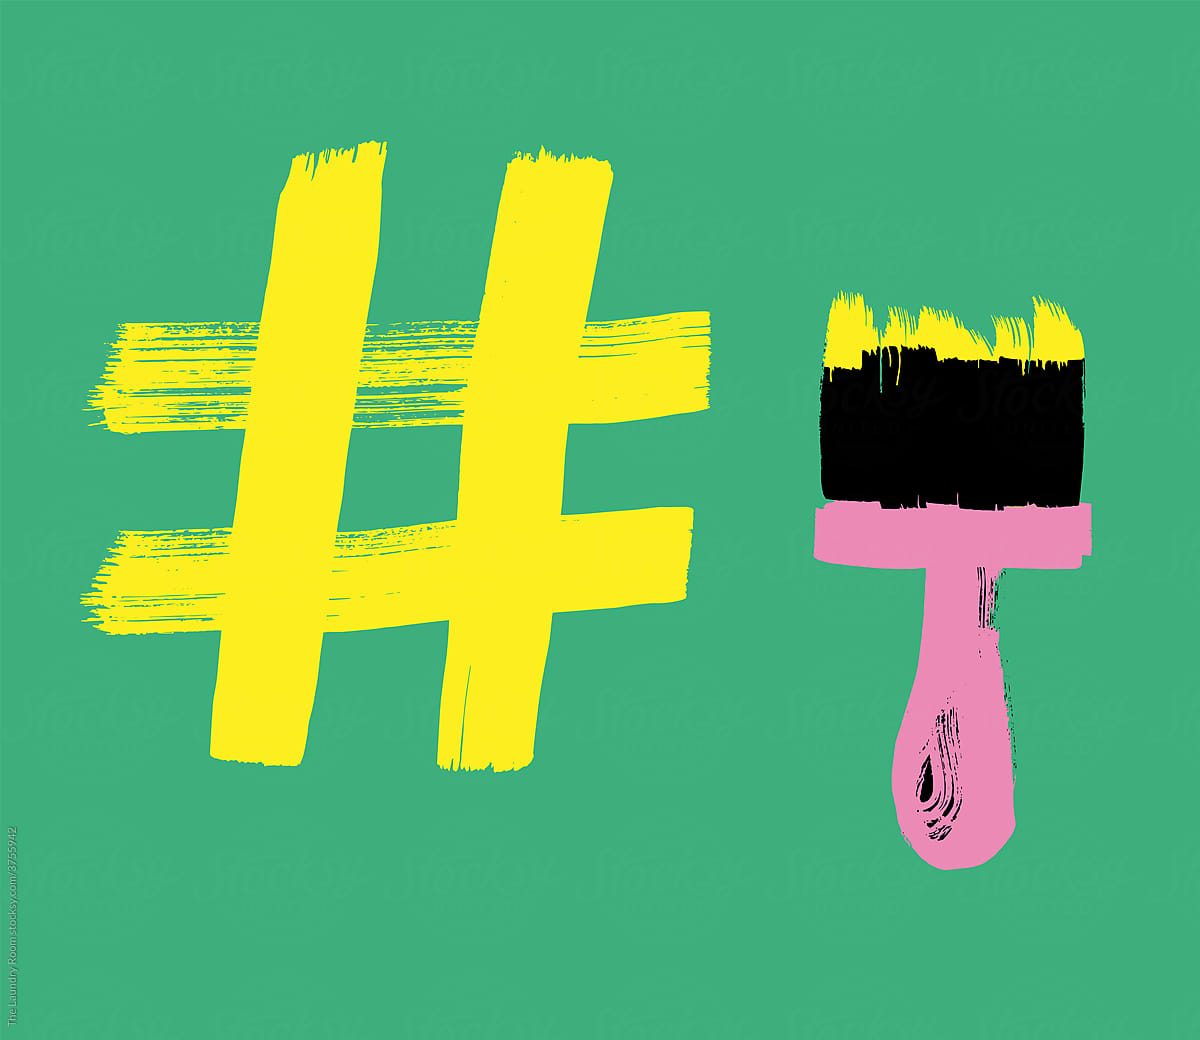 Hashtag and Paintbrush Creative Marketing